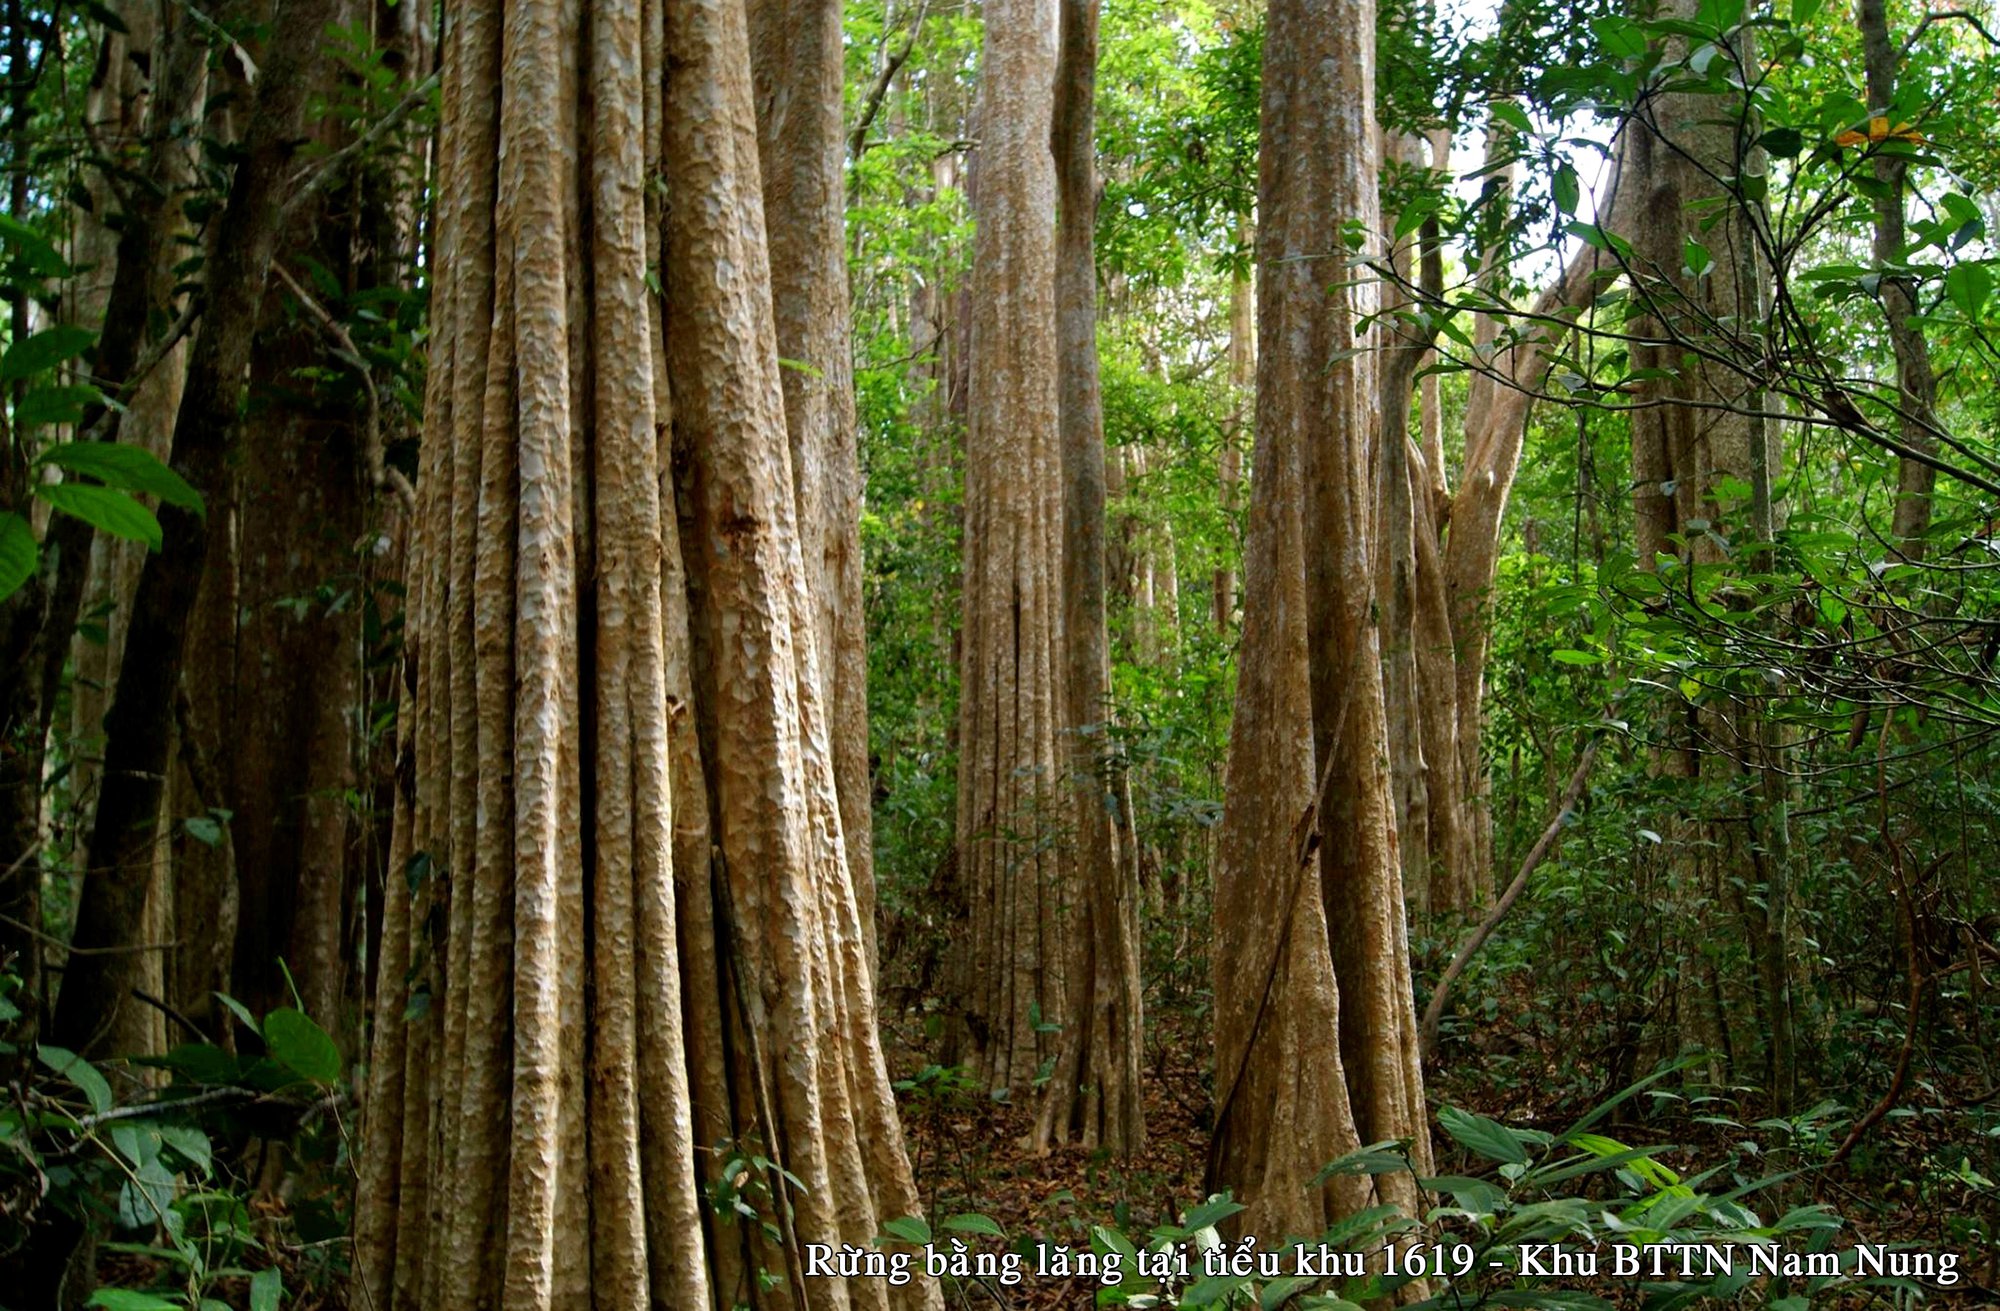 Khu bảo tồn thiên nhiên Nam Nung: “Kích hoạt” tiềm năng du lịch sinh thái trong môi trường rừng - Ảnh 1.